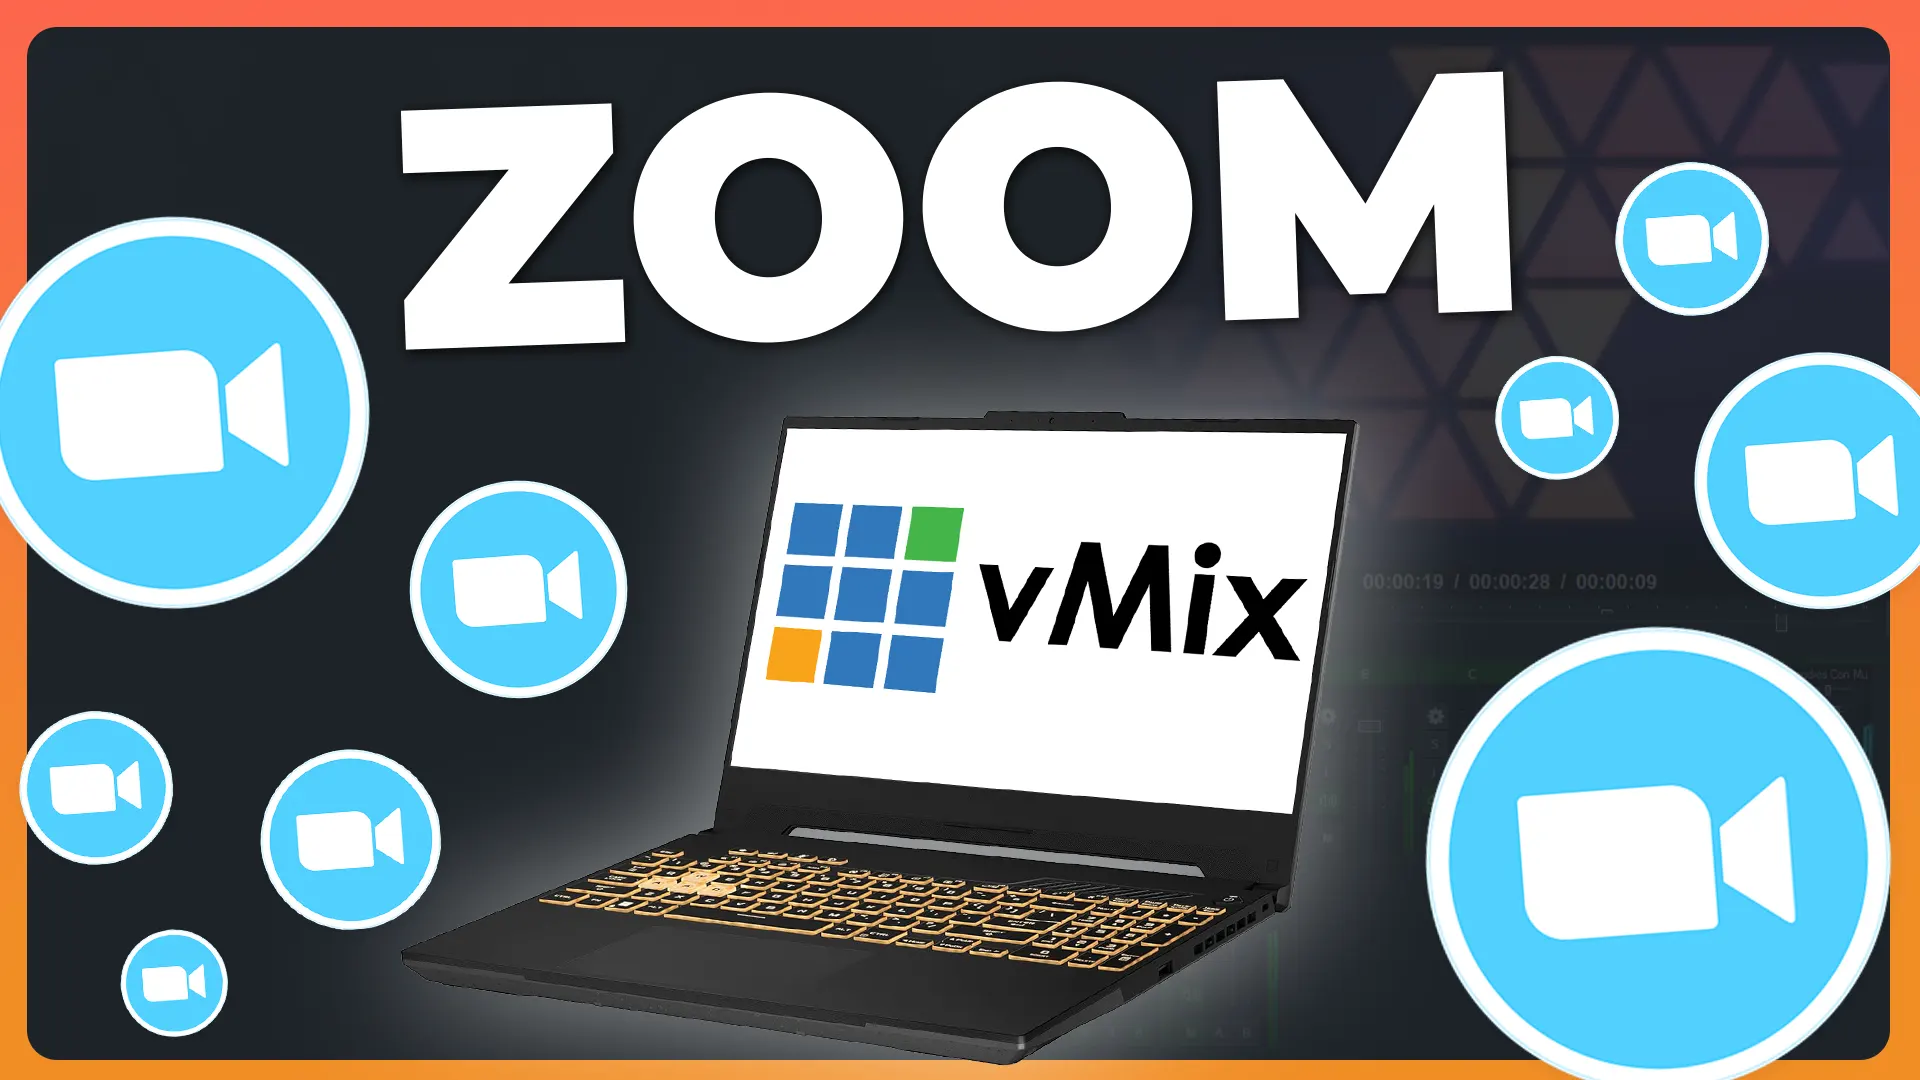 APRENDE cómo conectar llamadas de Zoom a vMix con retorno de video y audio